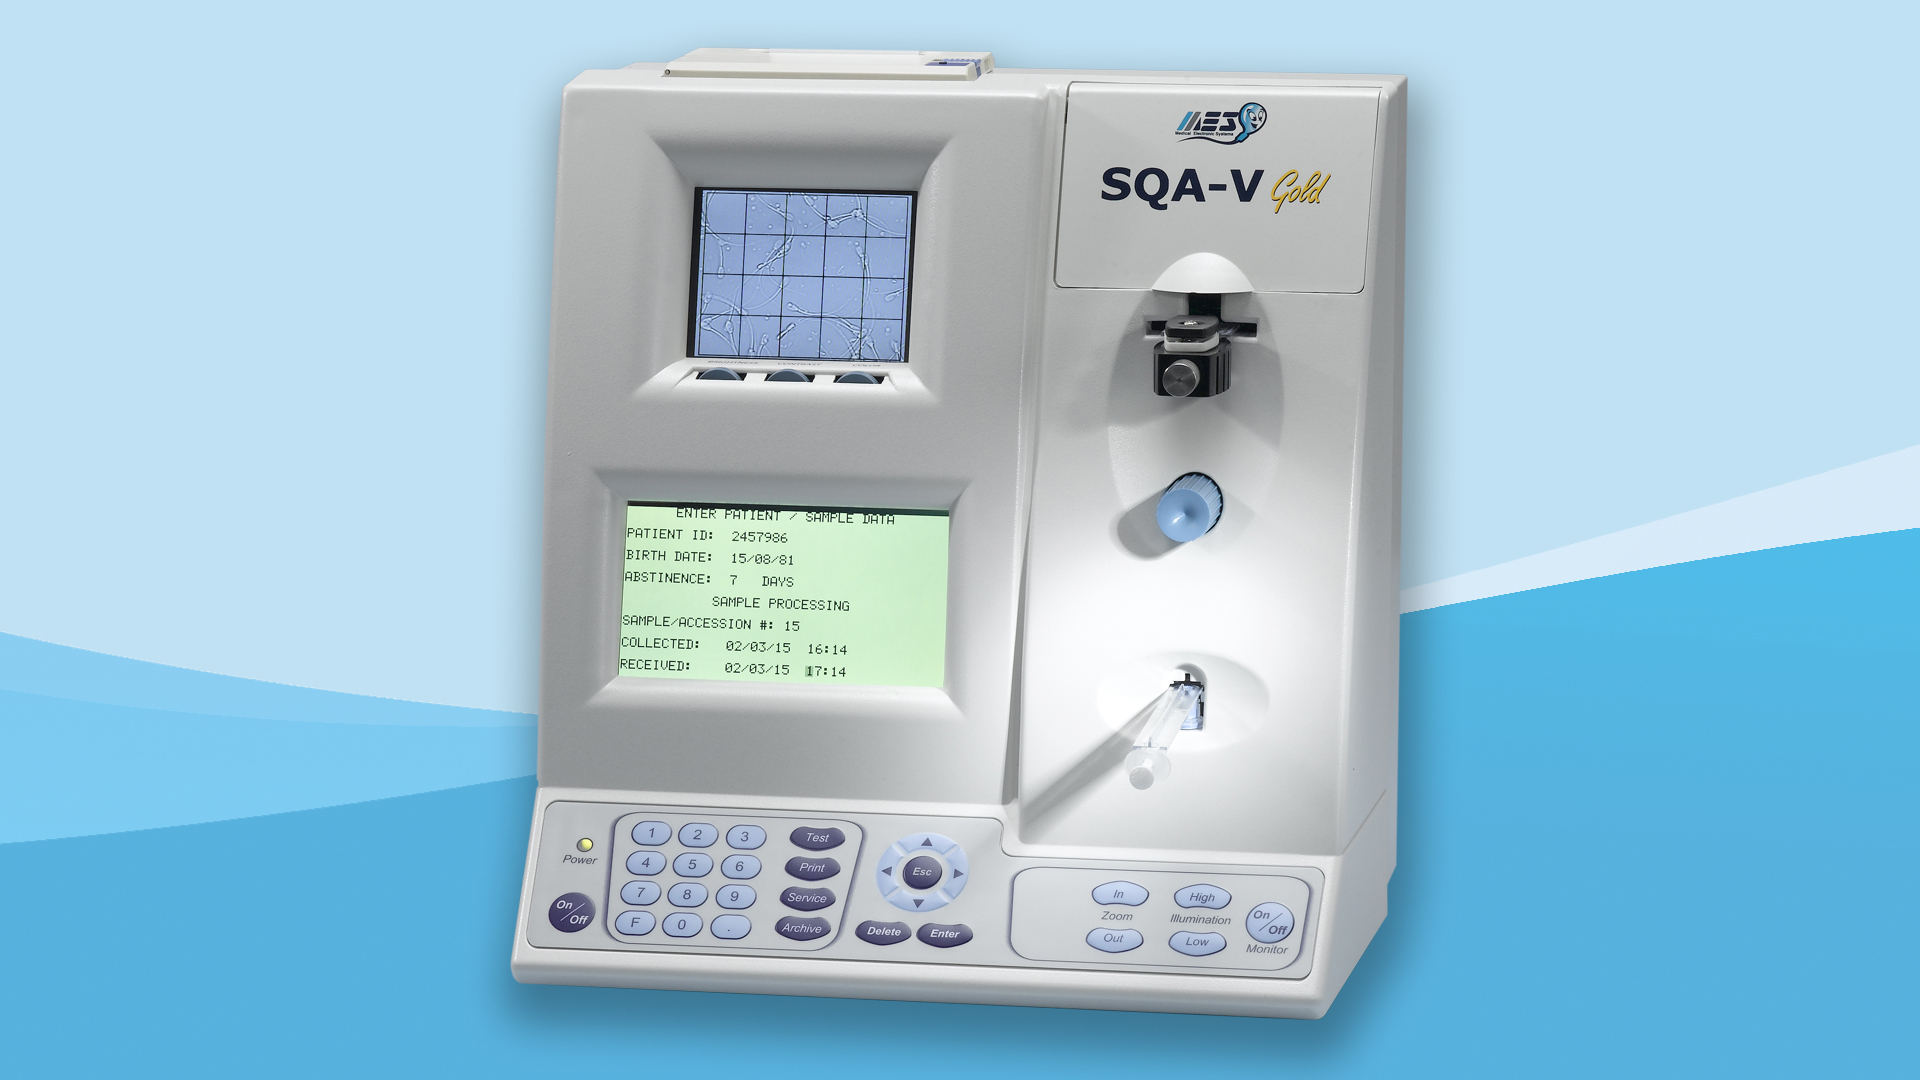 Автоматический анализатор качества спермы SQA-V — измерение и расчет показателей согласно ВОЗ 5-издания, визуализация и передача результатов на компьютер